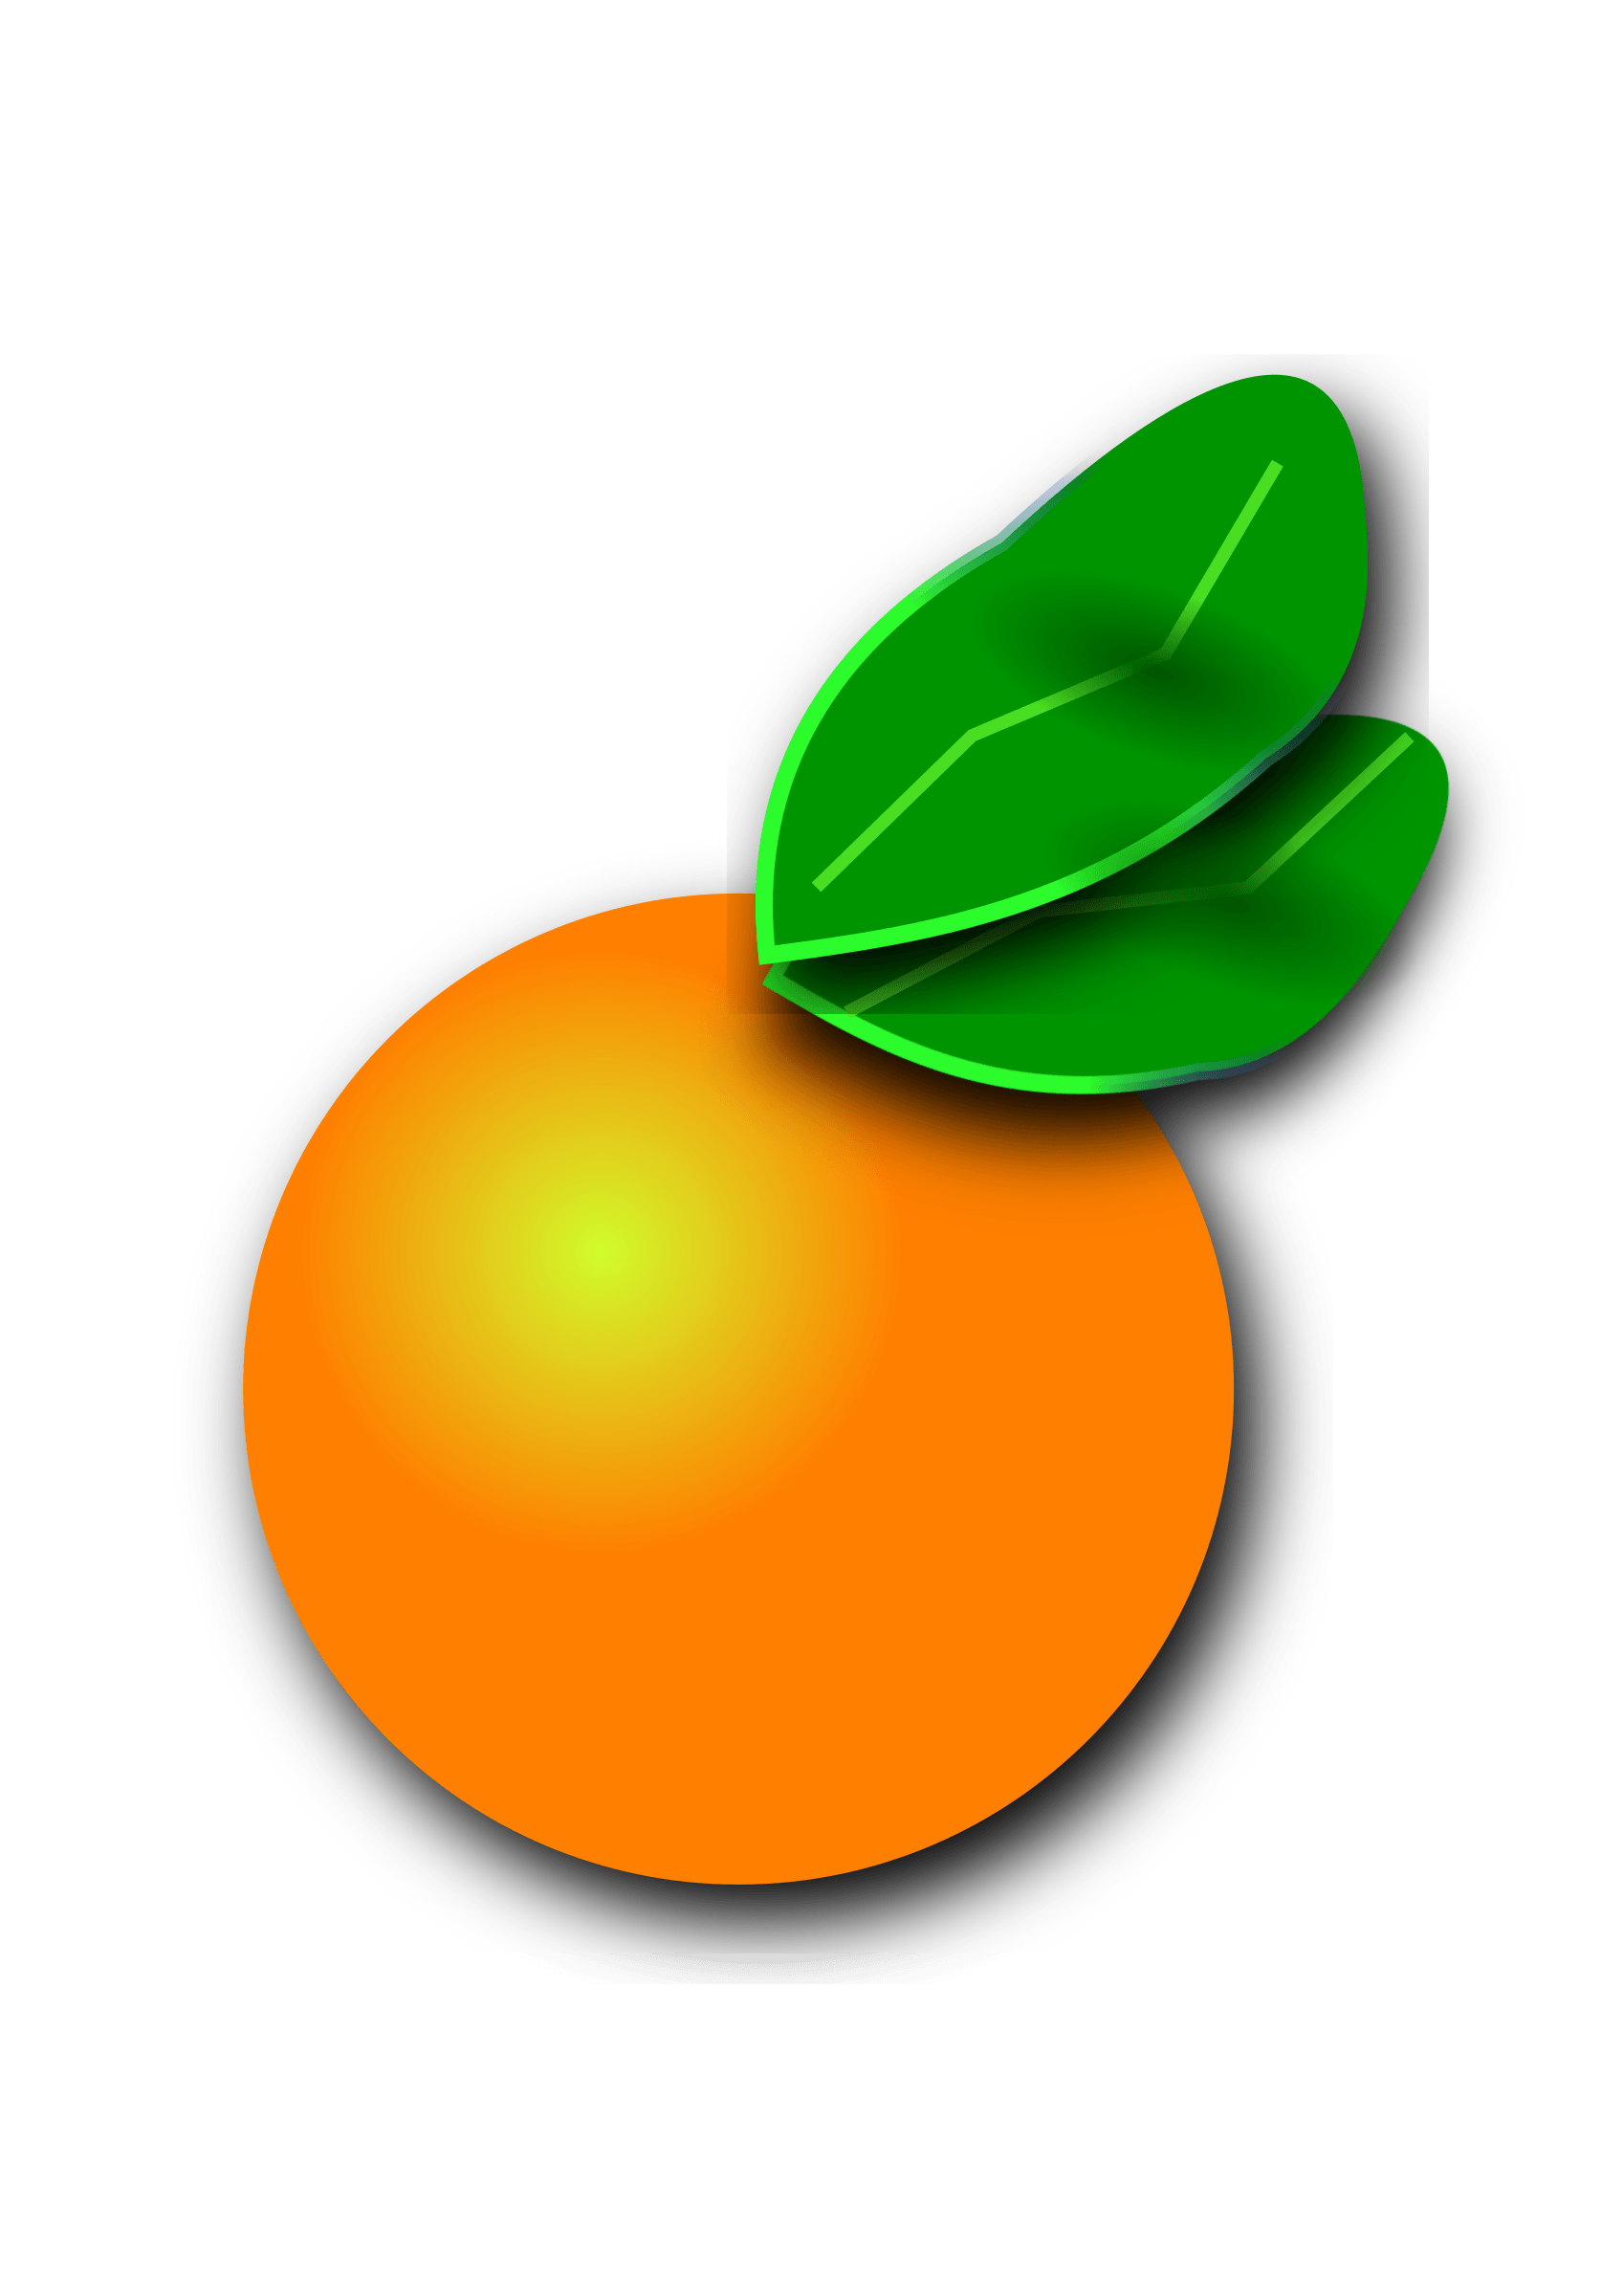 Florida Orange Logo - Clipart - Florida Orange Citrus